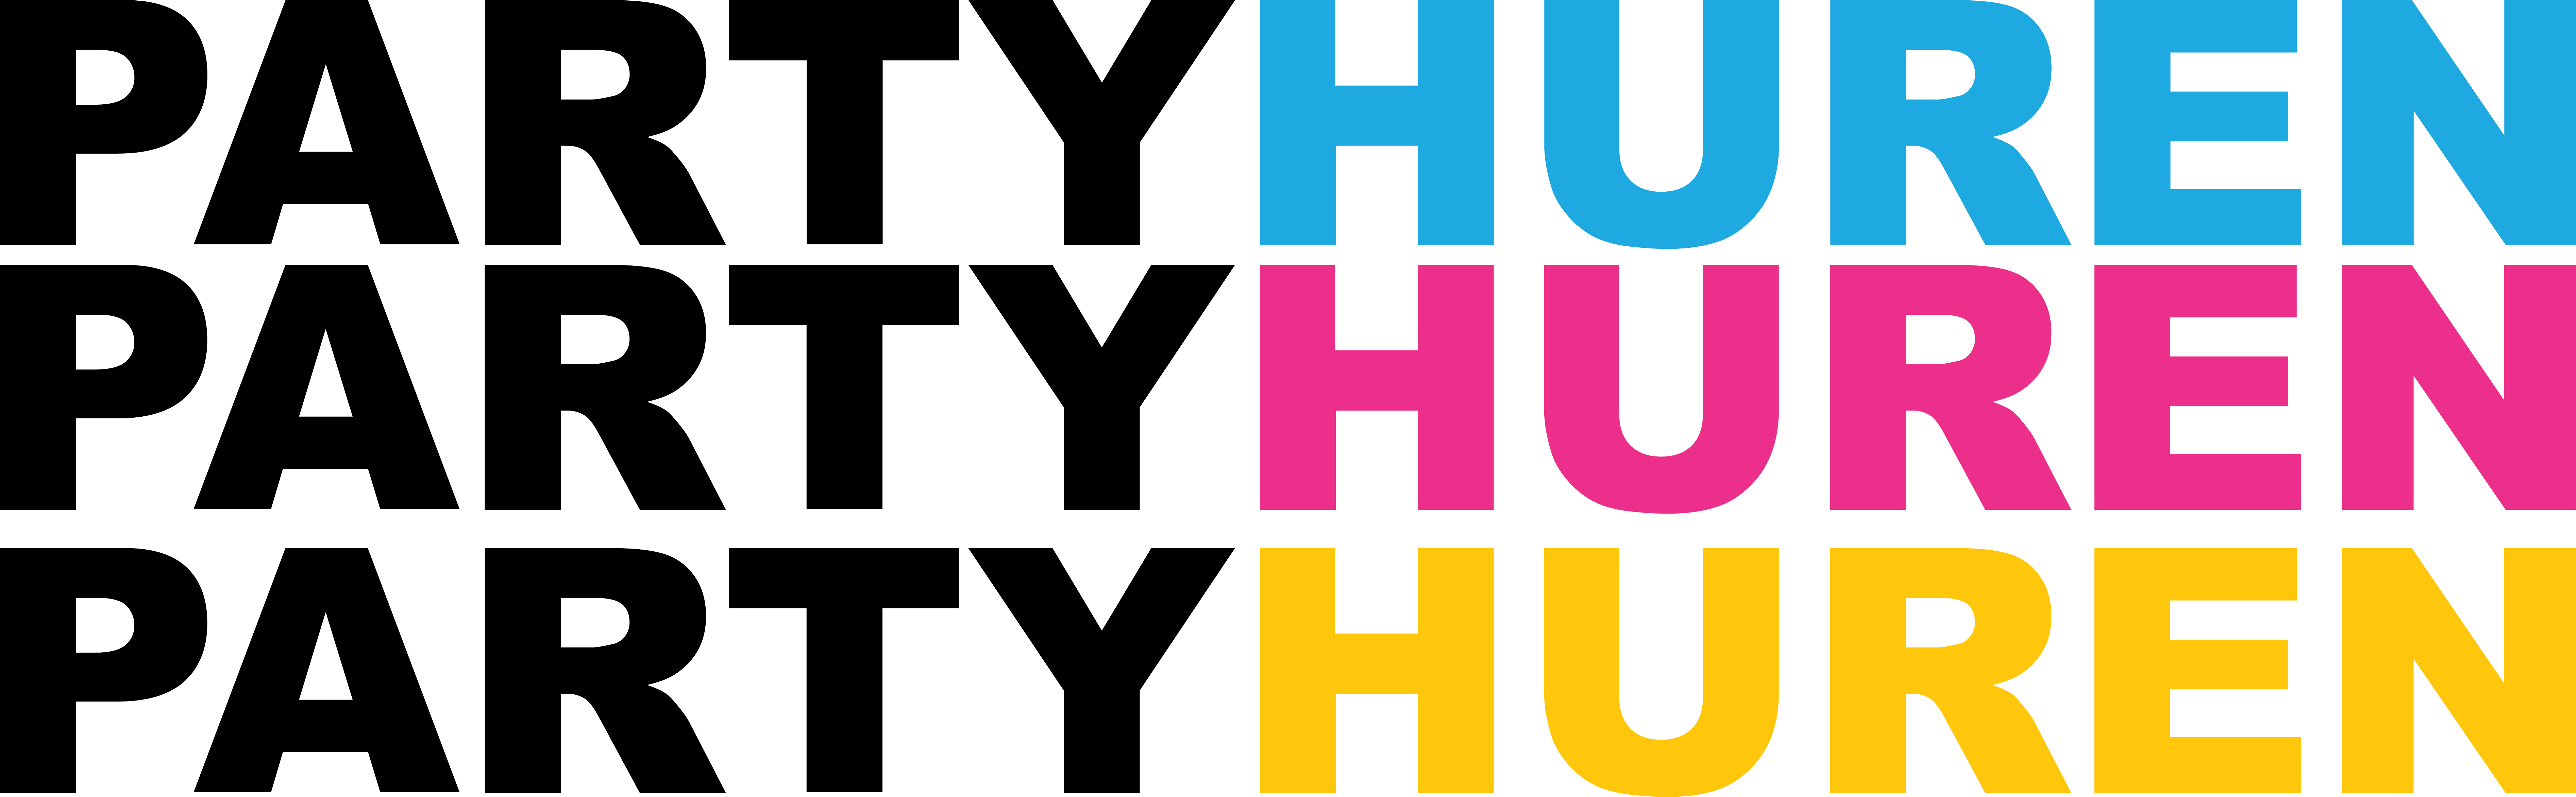 PartyHuren Logo